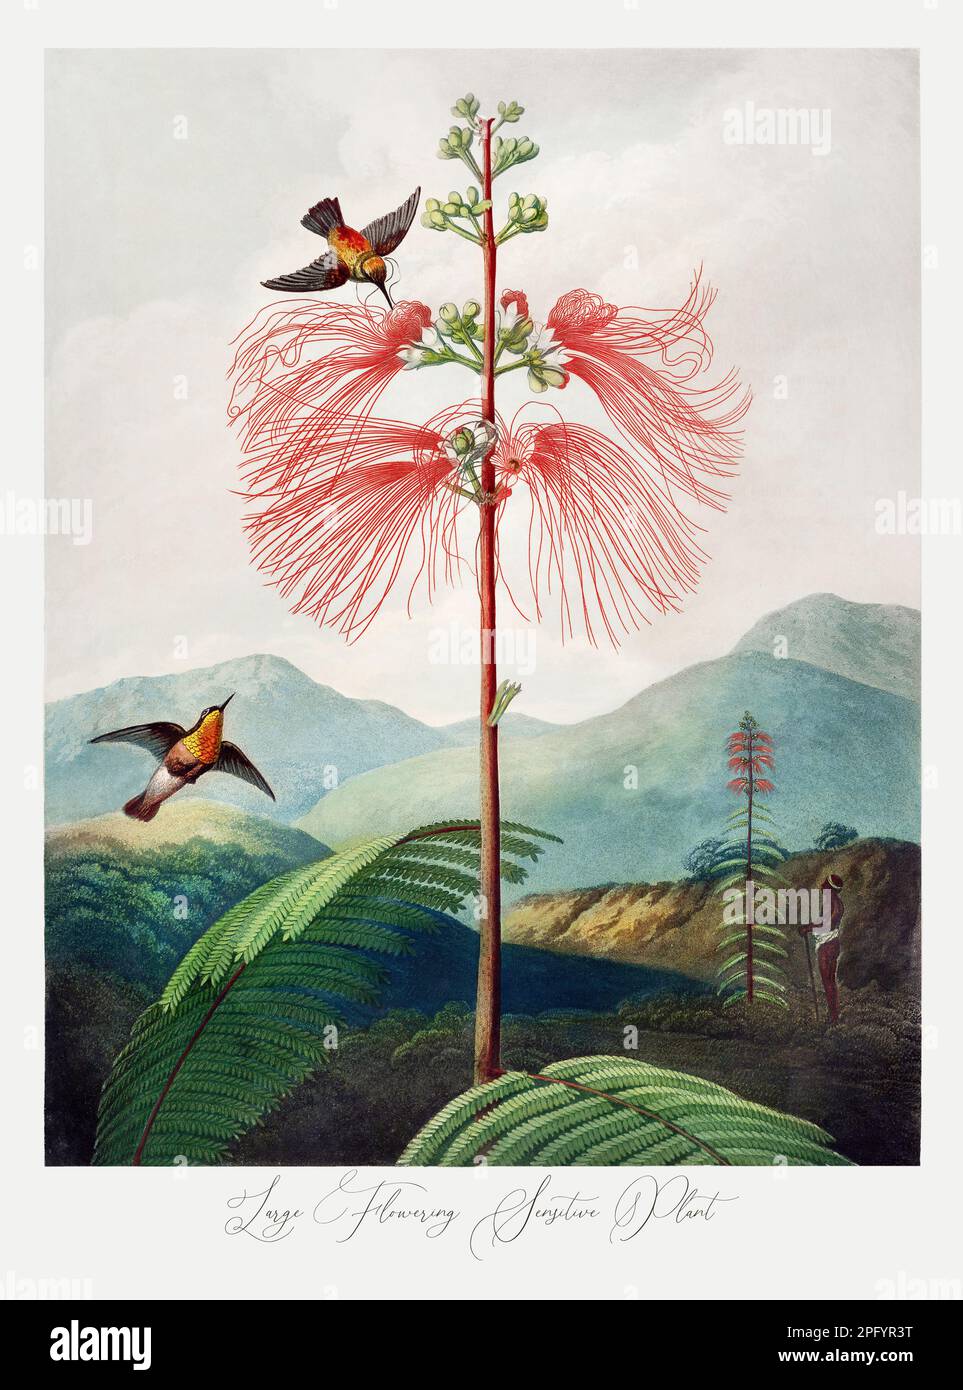 Grande plante sensible à la floraison. Peinture antique de fleurs victoriennes. Illustration du livre 'le Temple de Flora' de Robert Thornton (1807) Banque D'Images